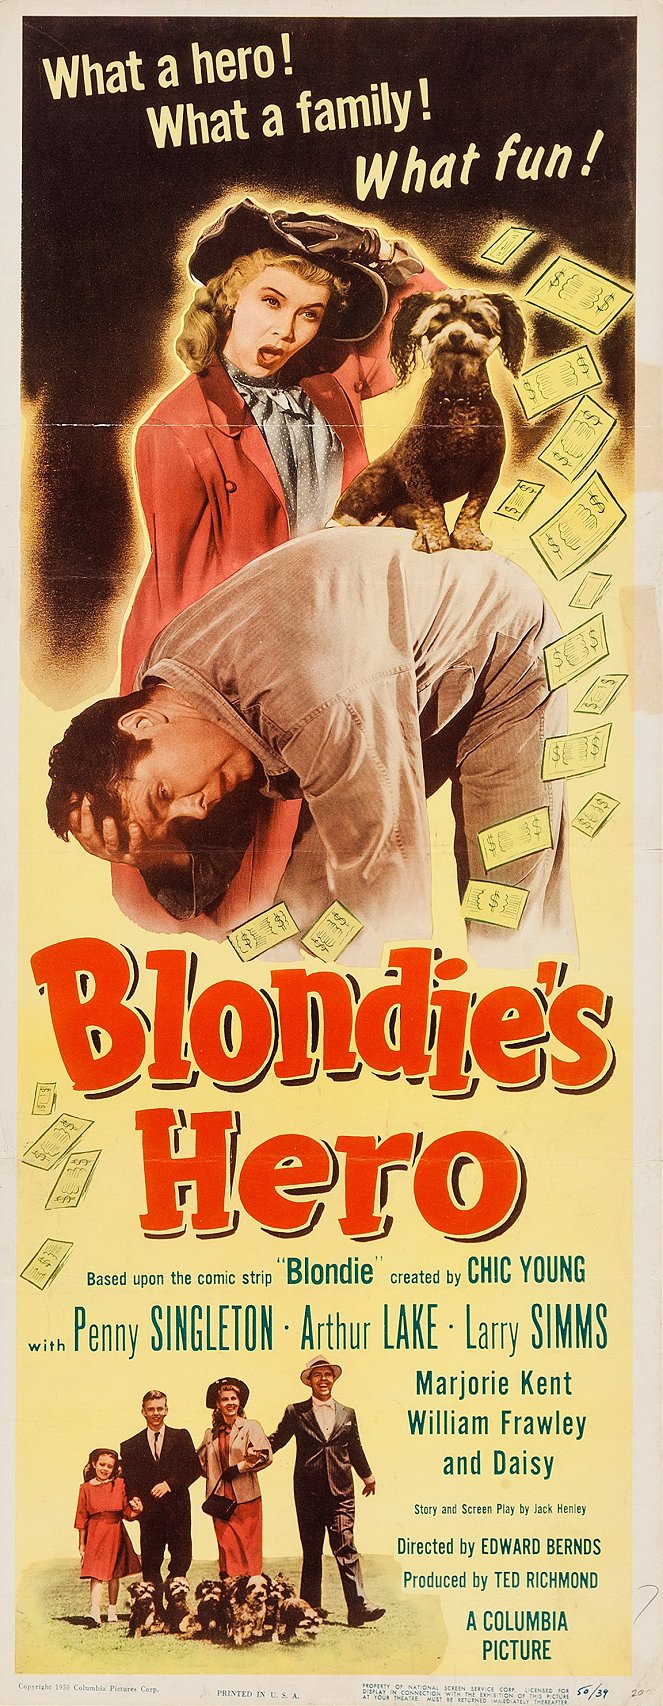 Blondie's Hero - Posters